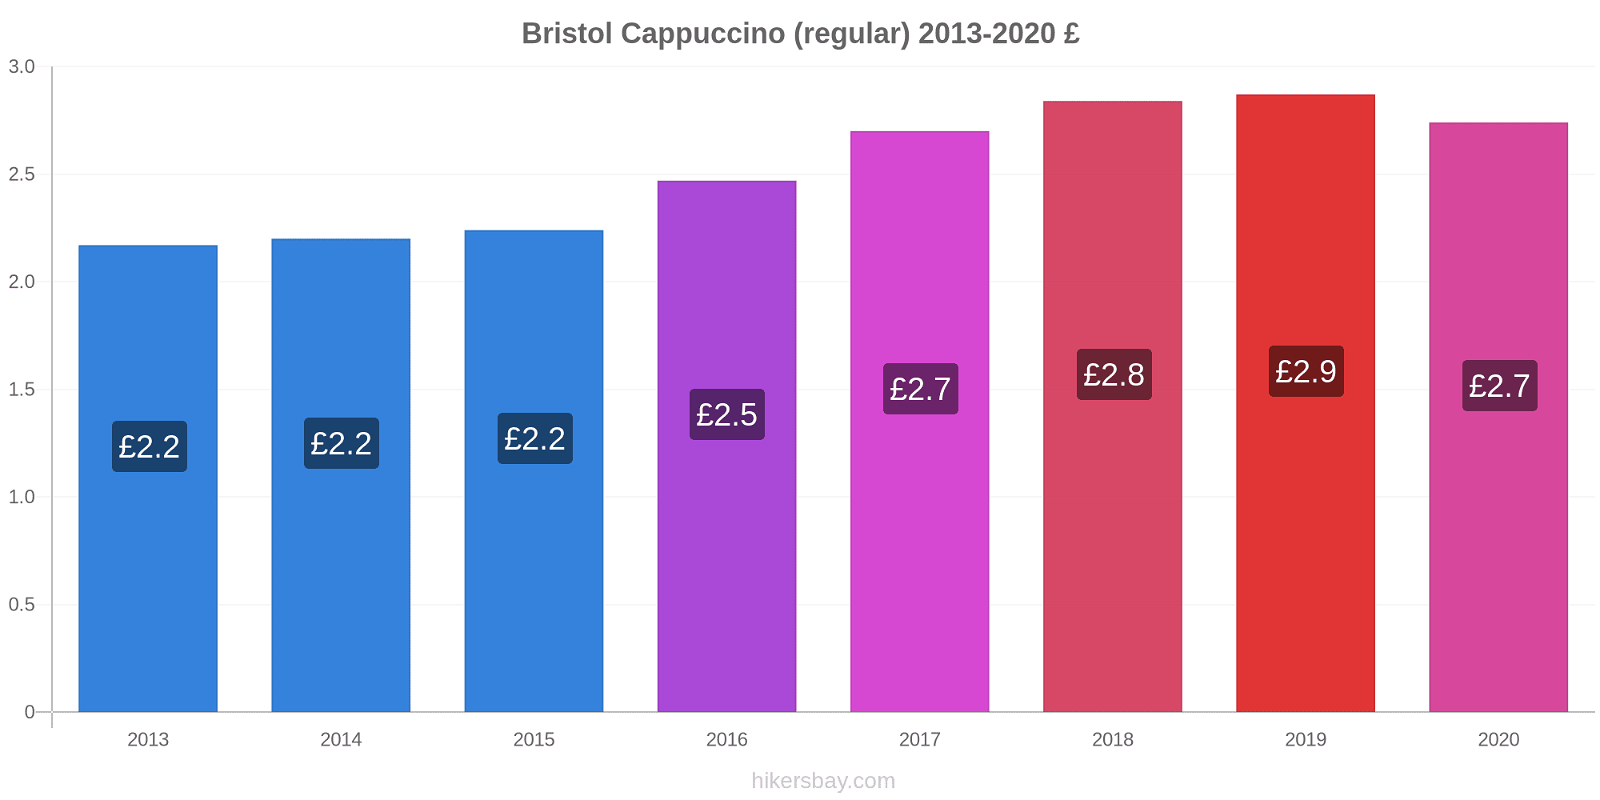 Bristol price changes Cappuccino (regular) hikersbay.com